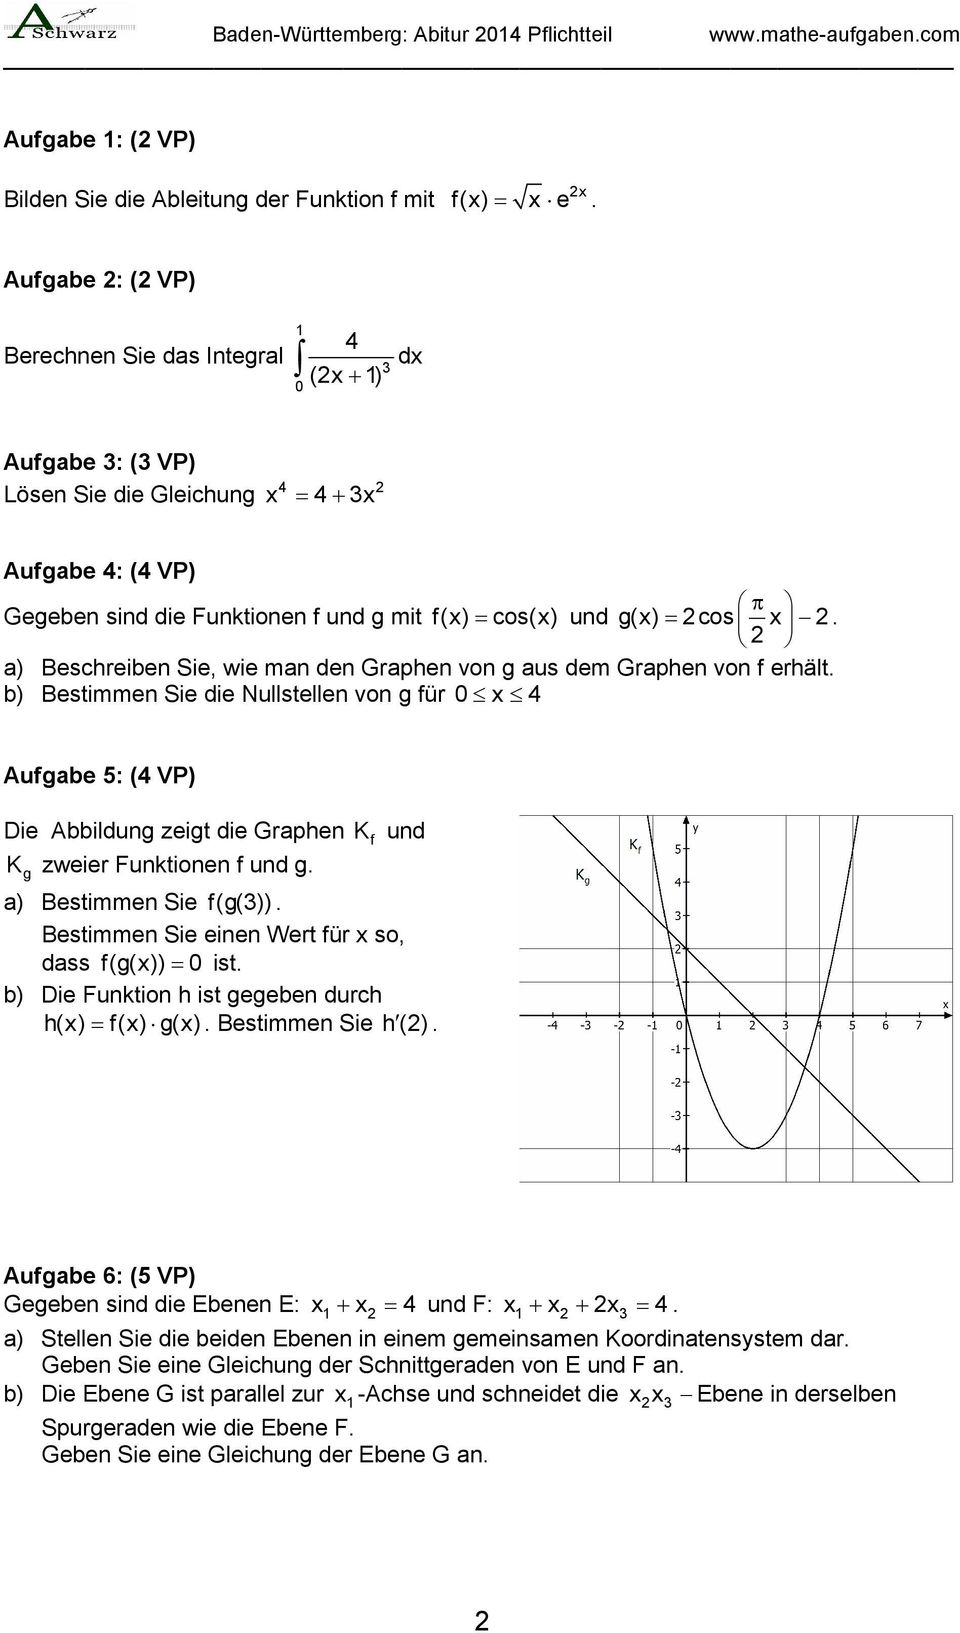 a) Beschreiben Sie, wie man den Graphen von g aus dem Graphen von f erhält.